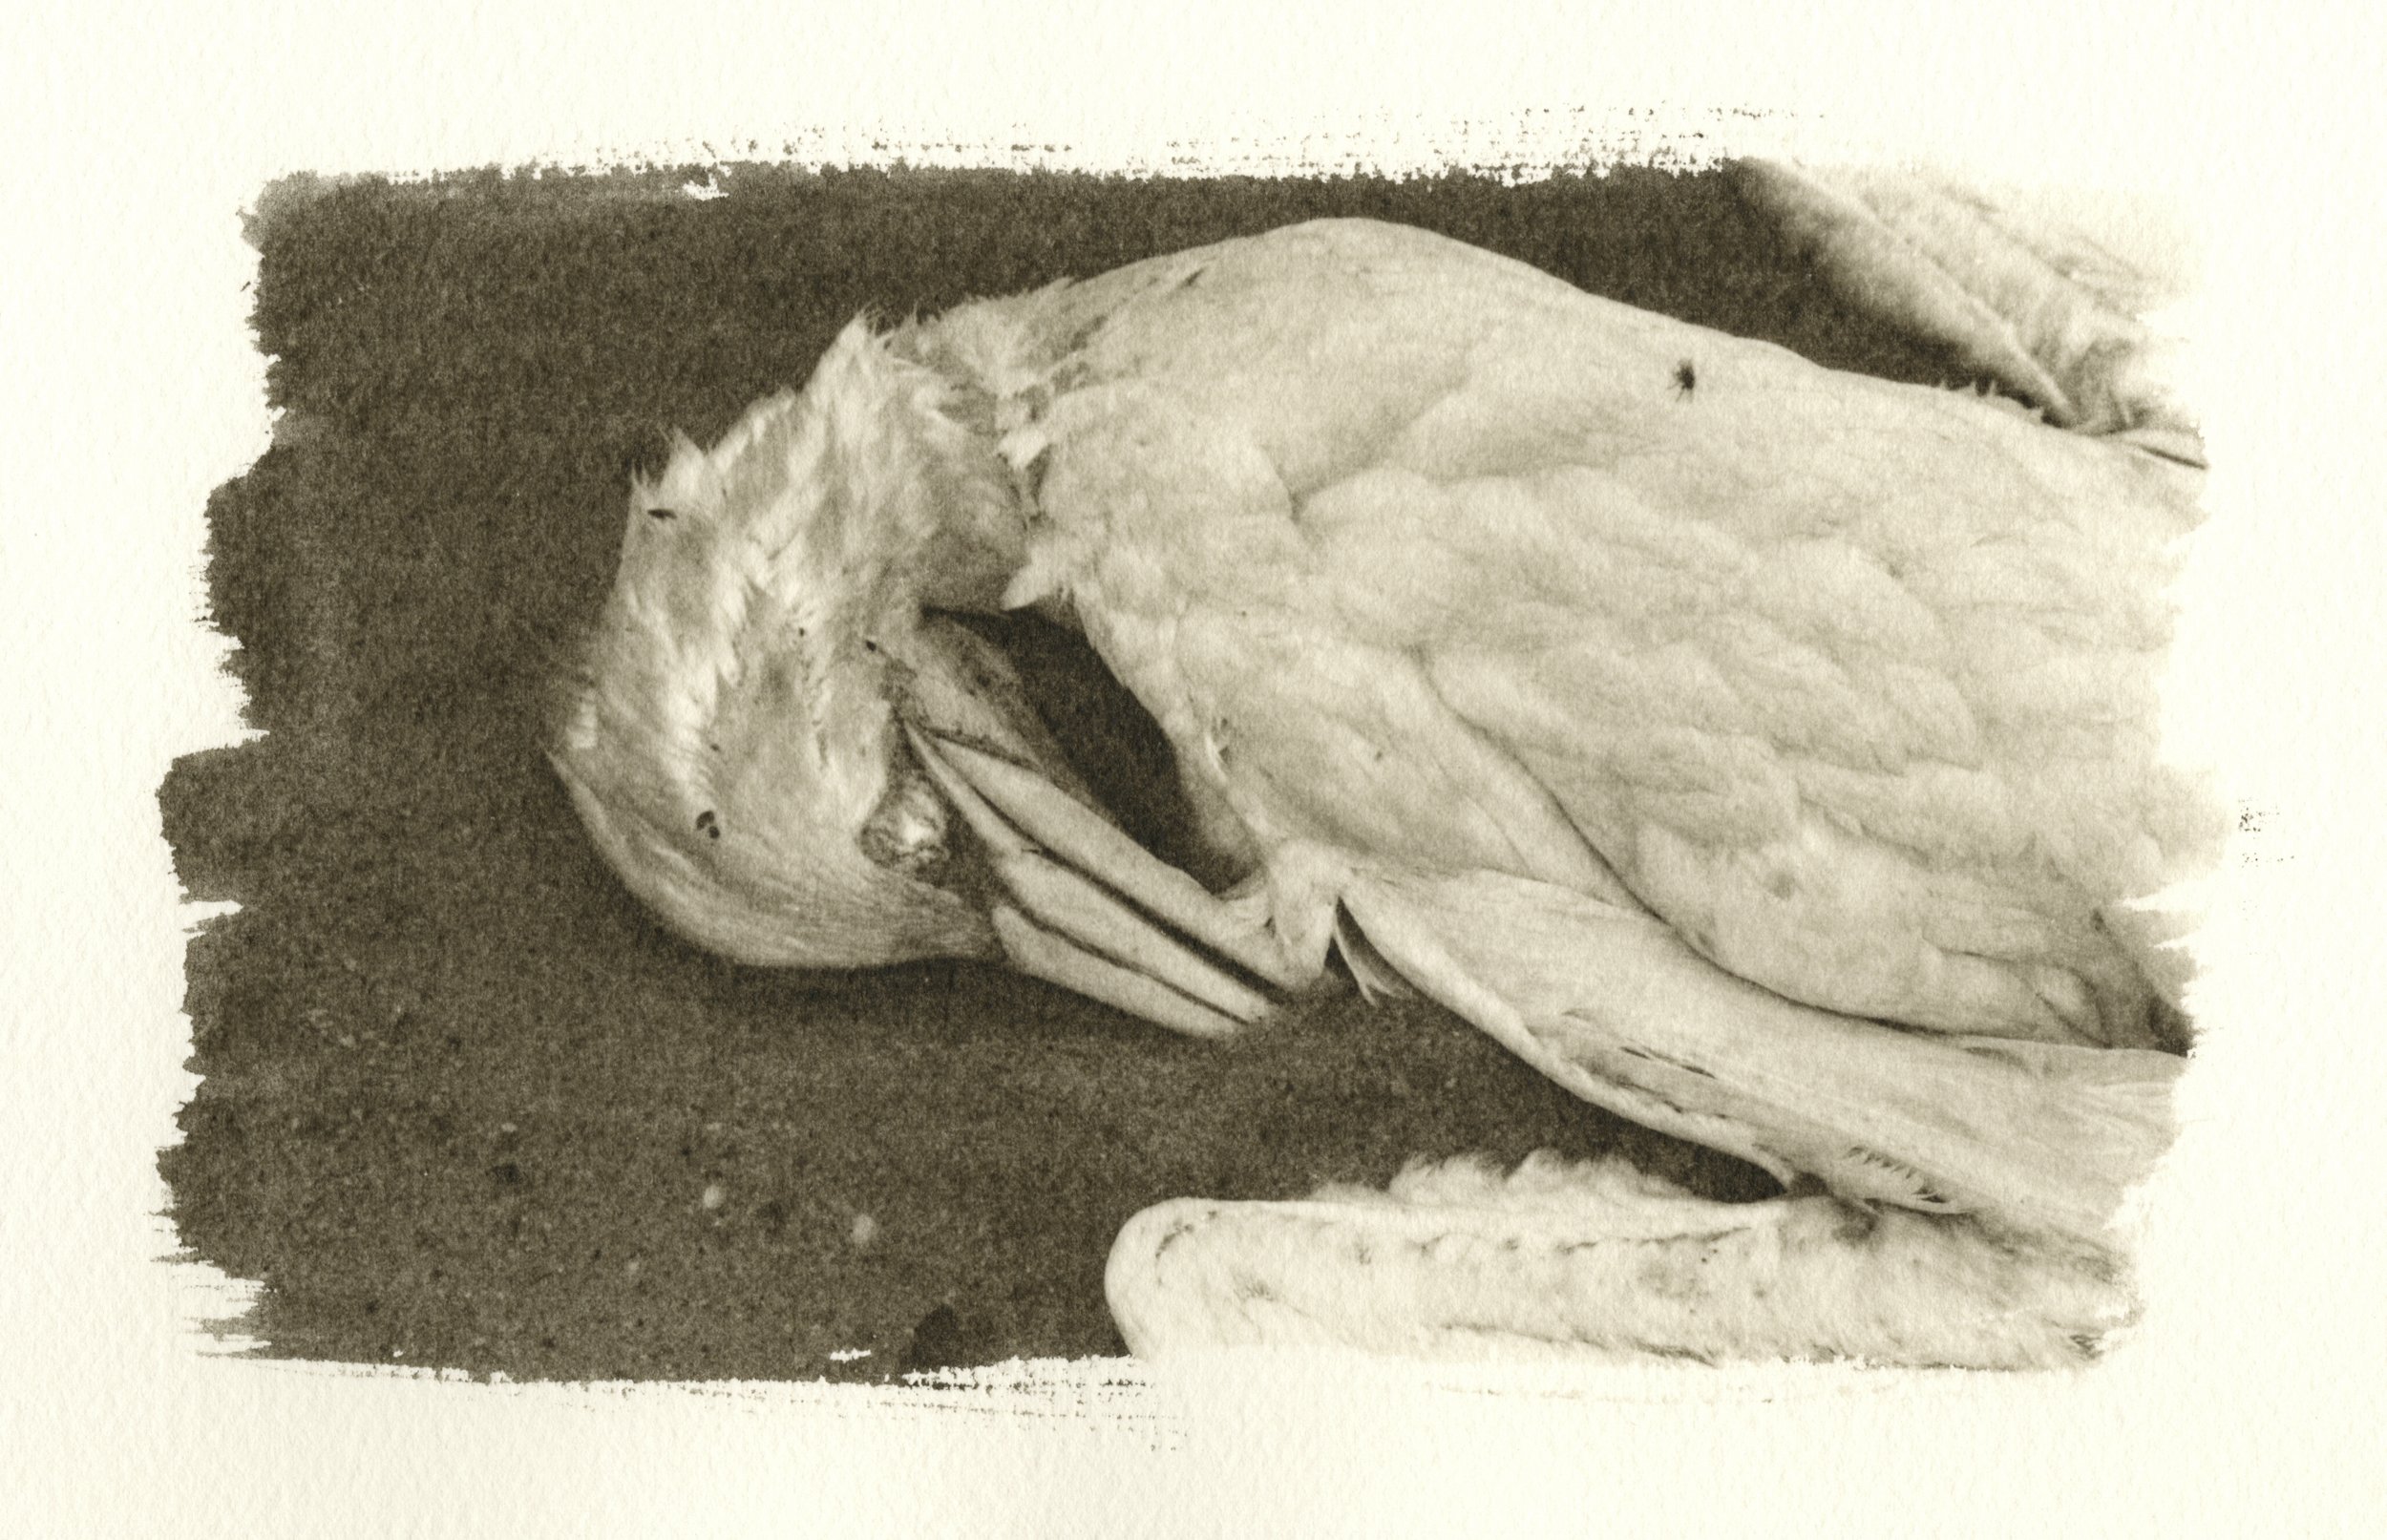 Dead Gull, Cape Cod, 2002